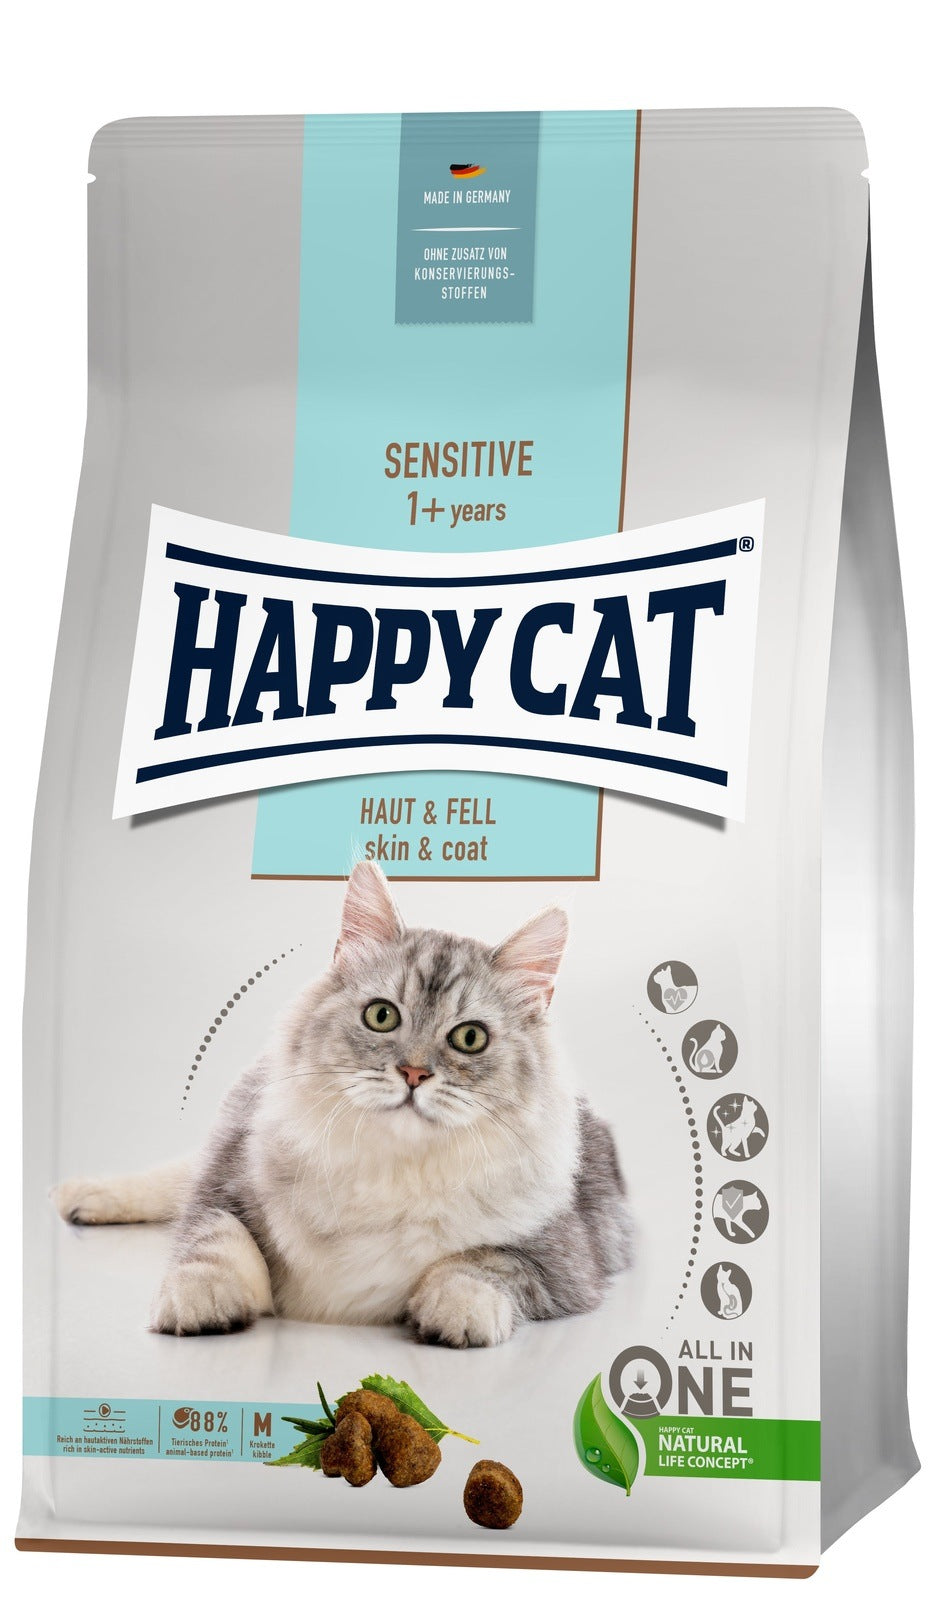 Happy Cat Sensitive Haut & Fell - zoo.de